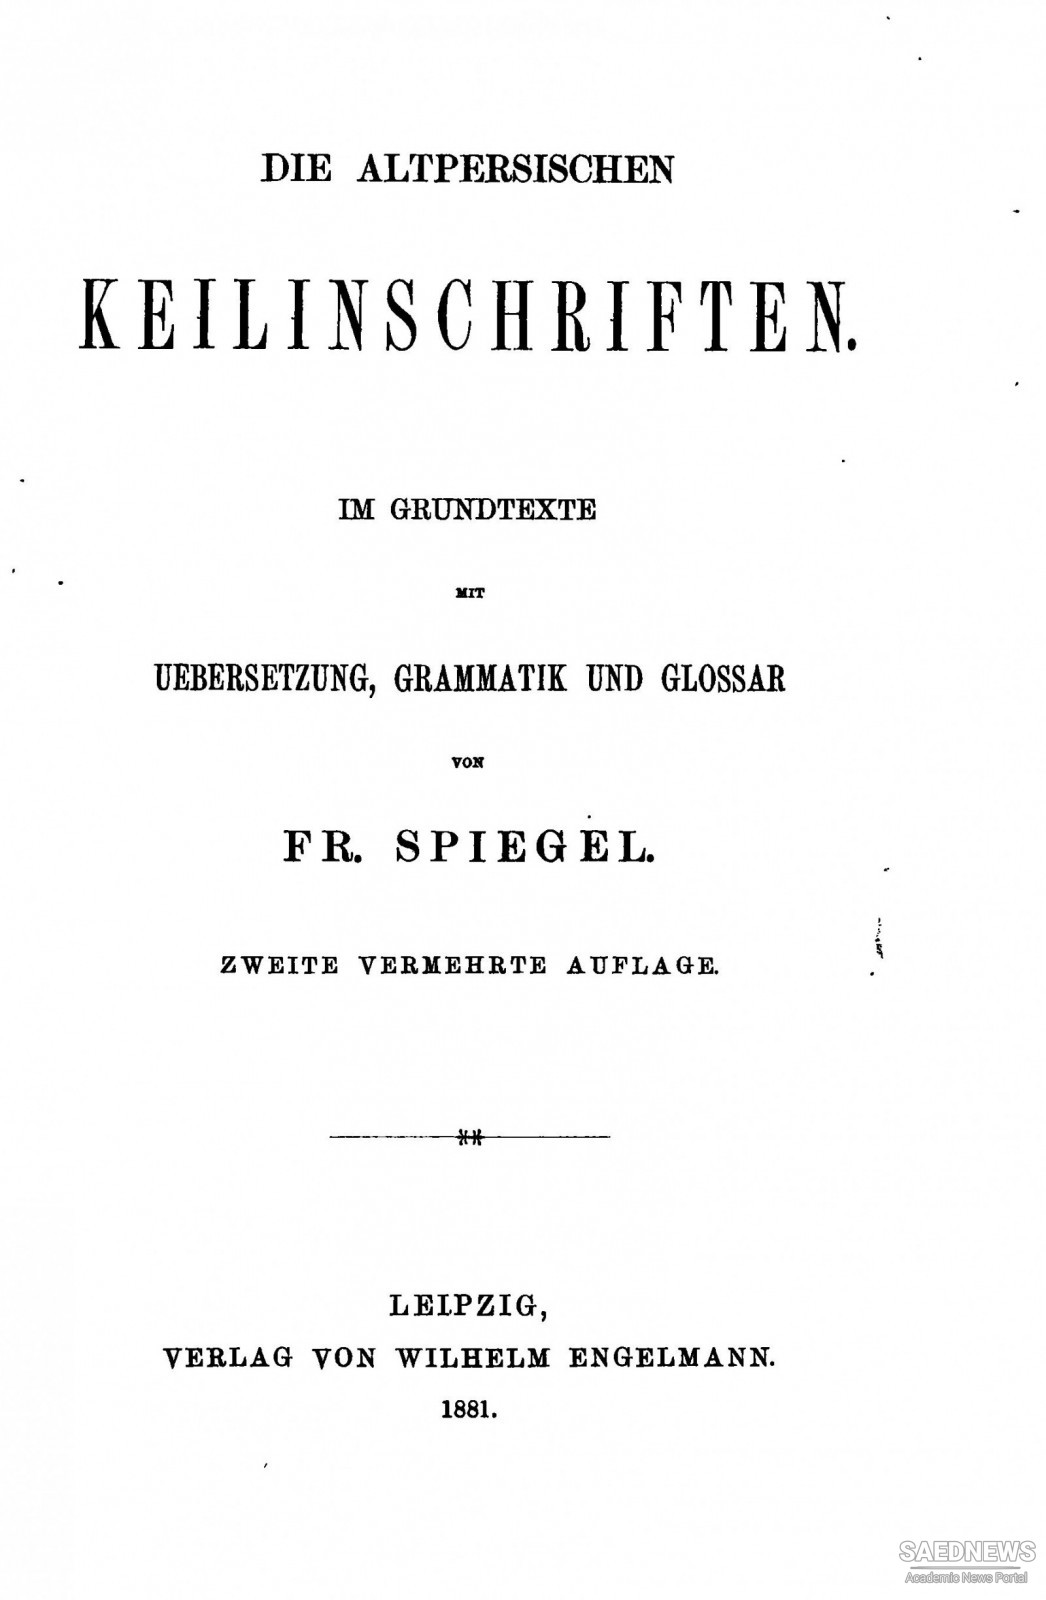 Fredriedrich von Spiegel and His Zoroastrische Studien